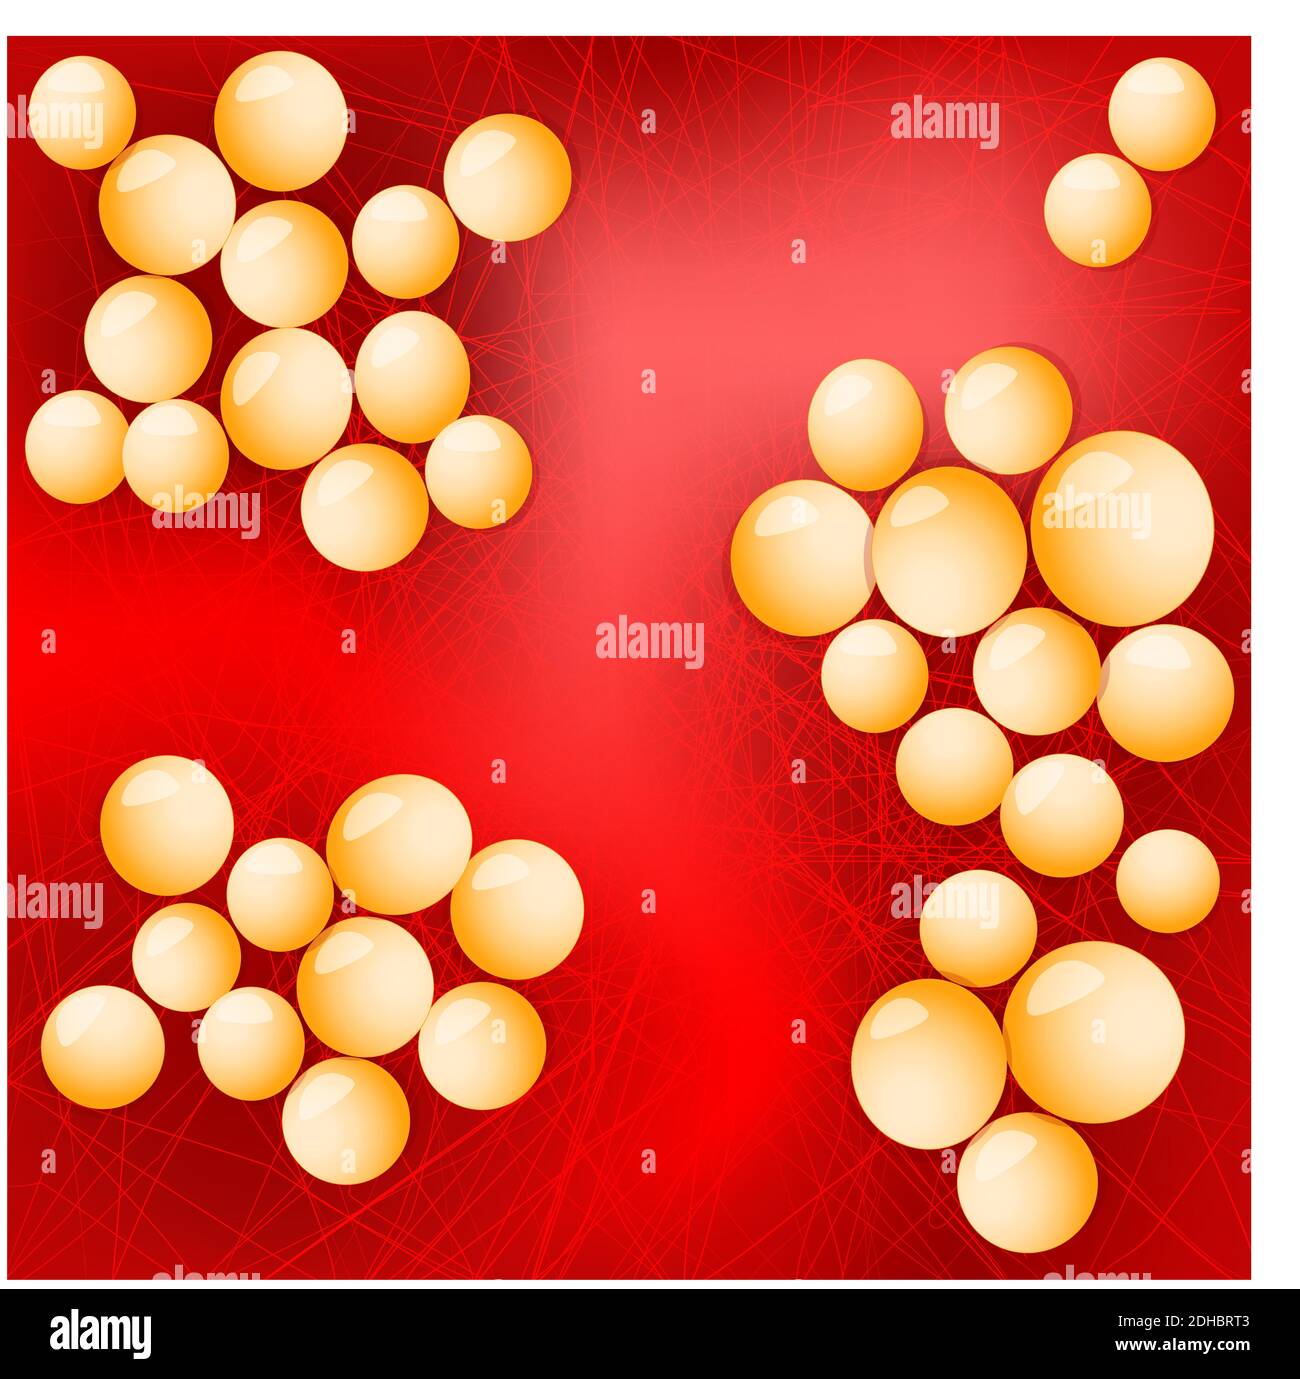 Staphylococcus aureus auf rotem Hintergrund. Vektorgrafik für Ihre Design-, Bildungs-, Biologie-, wissenschaftliche und medizinische Verwendung. Stock Vektor